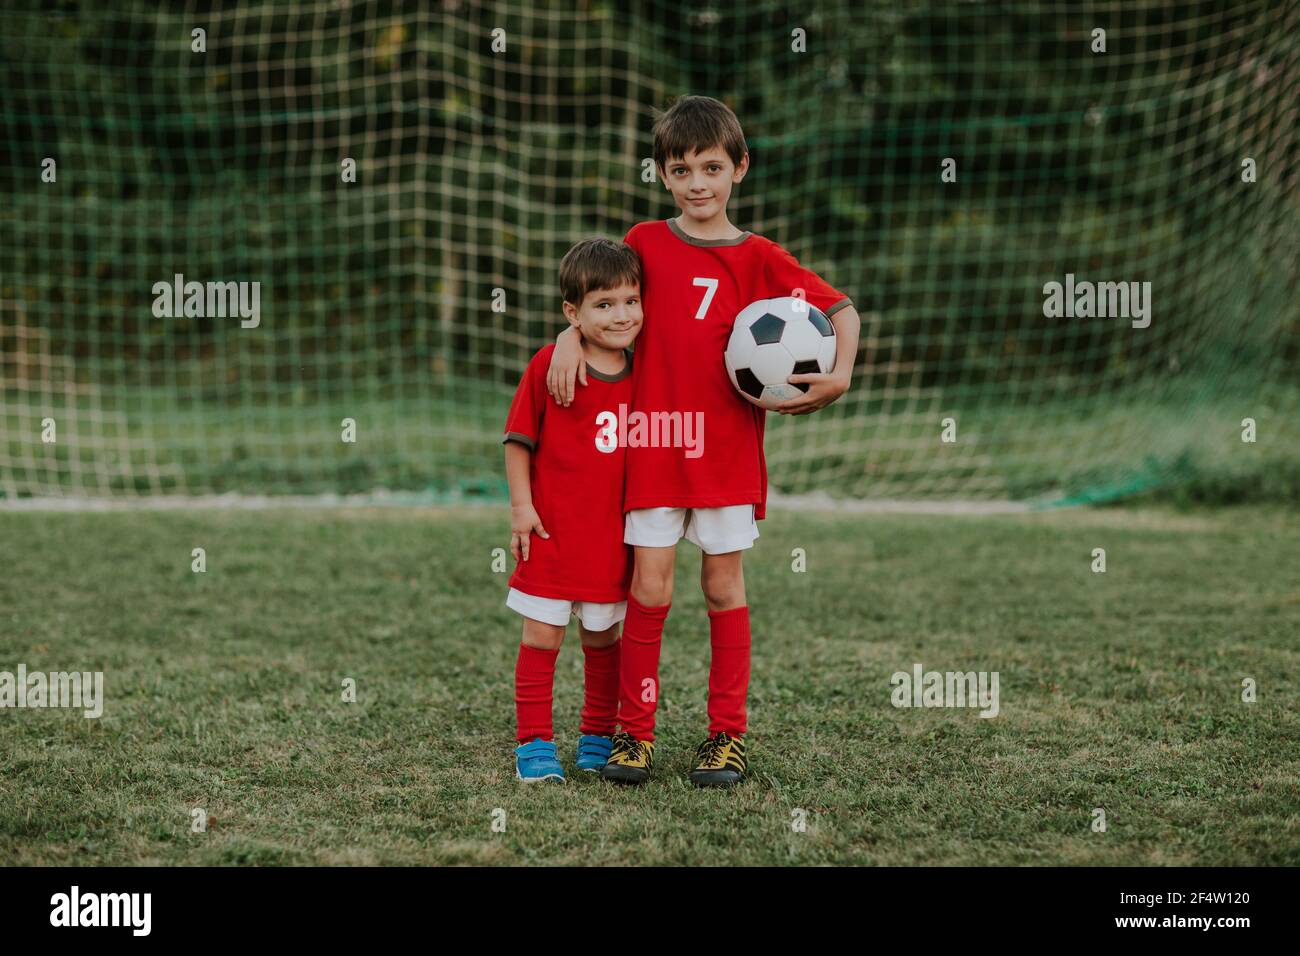 Jóvenes jugadores de fútbol de pie delante de la red de portería. Retrato completo de dos compañeros de equipo de fútbol con vestidos rojos sujetando el balón abrazándose unos a otros. Foto de stock